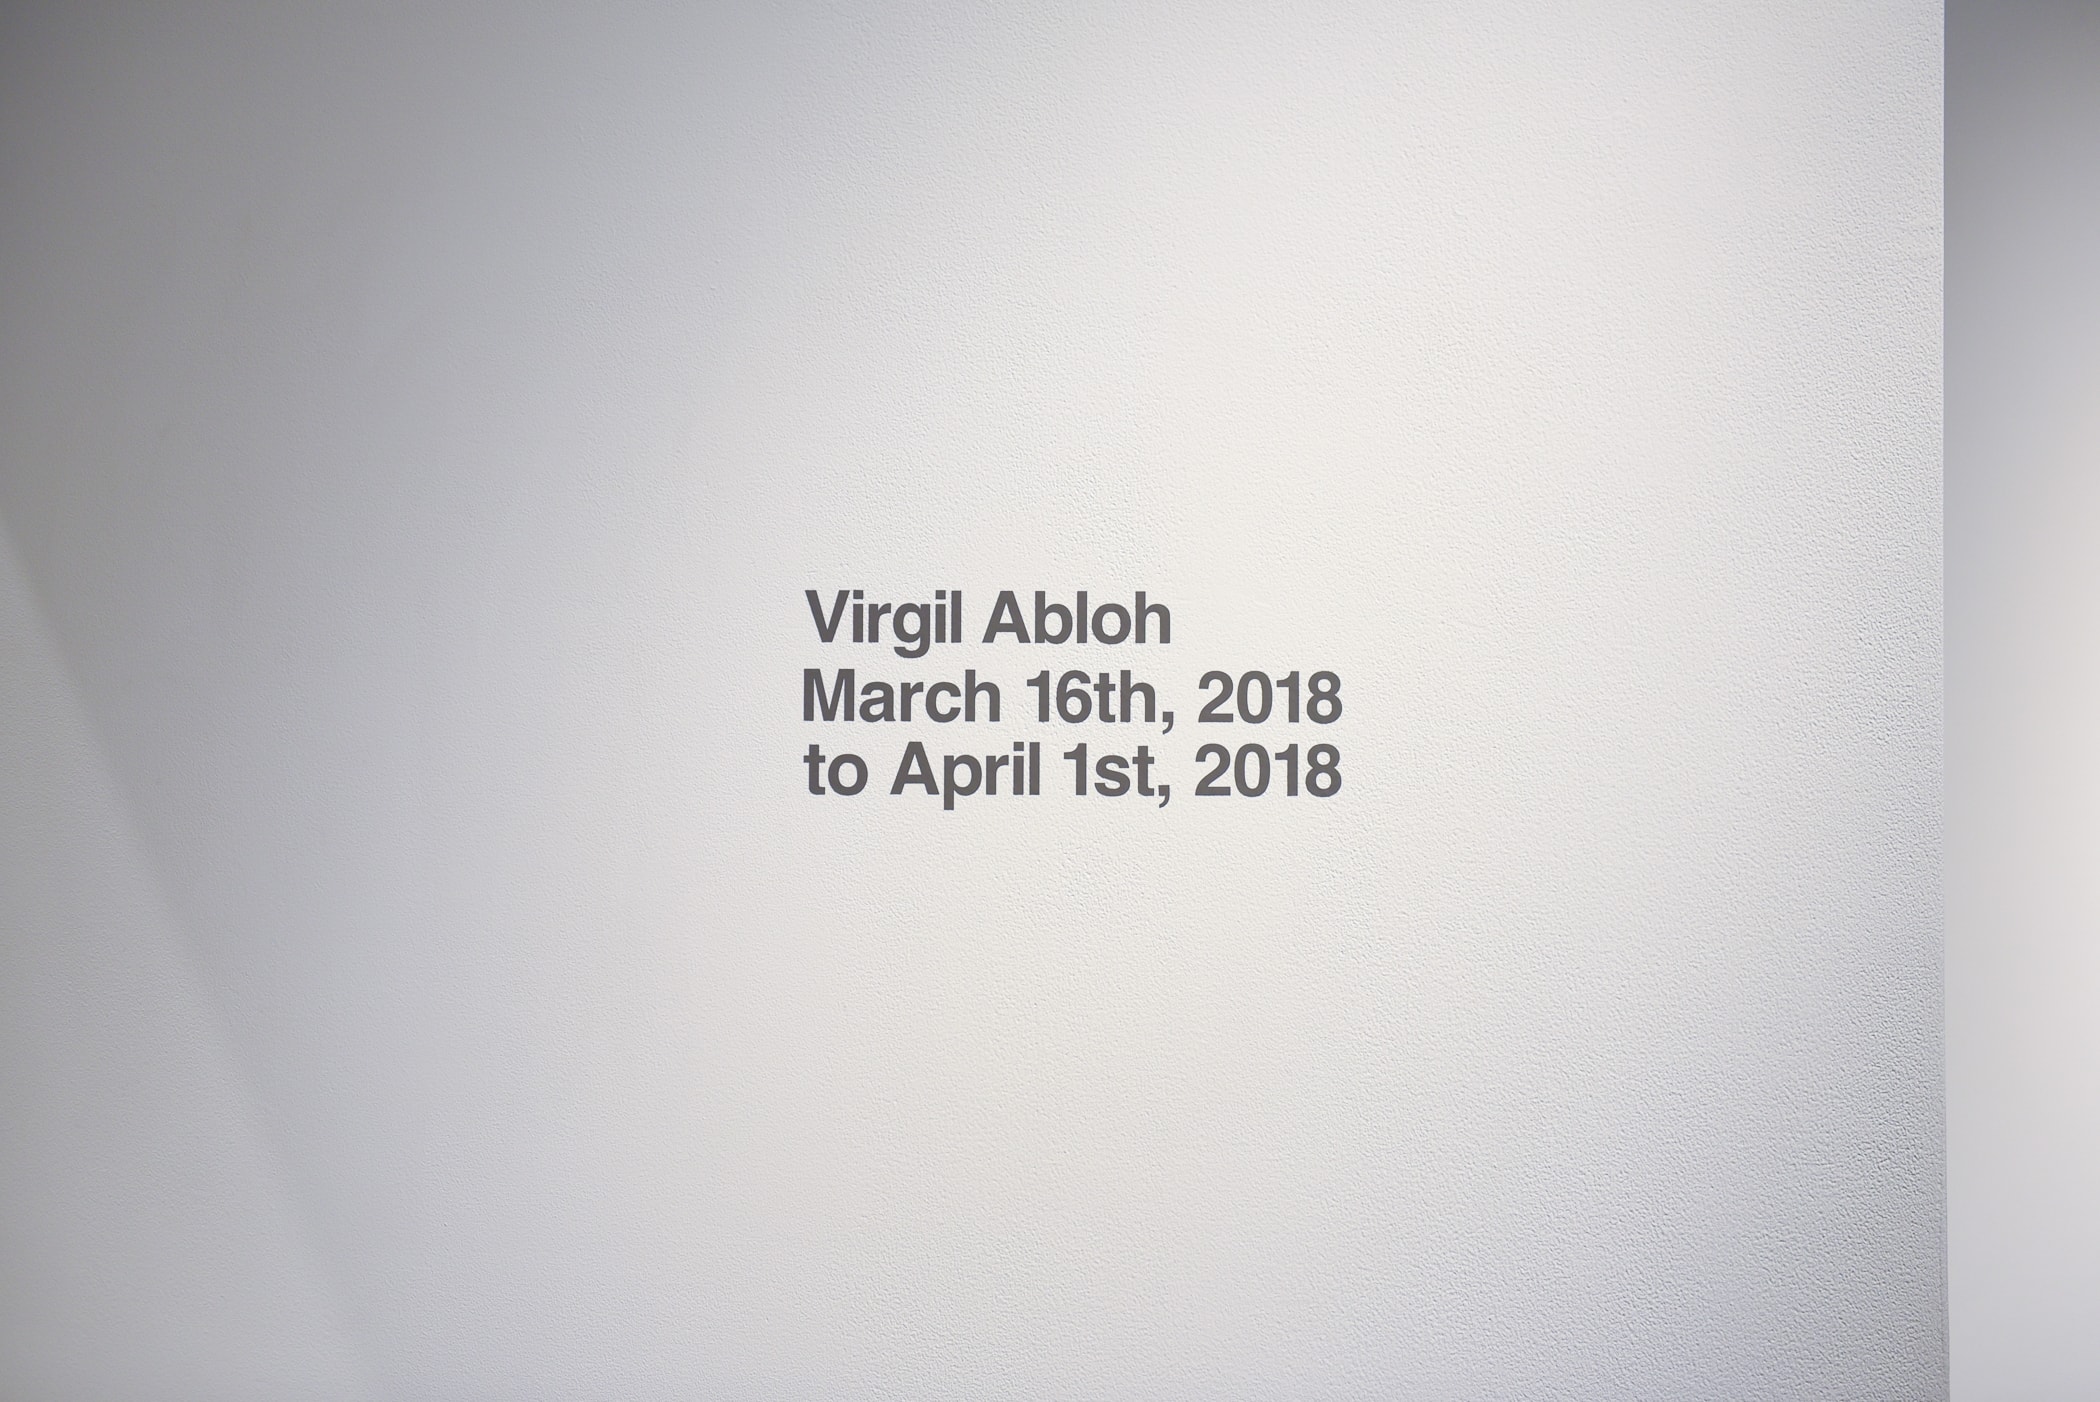 ヴァージル・アブロー初の個展 “PAY PER VIEW” に潜入 メディアや広告に踊らされ、消費によって形作られる現代社会へ向けた異才からのメッセージを体感せよ 良くも悪くもメディアや広告に踊らされ、消費によって形作られる現代社会へ向けた異才からのメッセージ 3月16日（金）より、『Kaikai Kiki Gallery』ではVirgil Abloh（ヴァージル・アブロー）の個展“PAY PER VIEW”が開催されている。「俺たちは全員、消費という行為によって形作られている」、そんなキャッチコピーを掲げる本展では、メディアが人類による世界の見方にいかに重大な影響を与えているのかを示すものだ。  ひとつめの部屋の中央には、モーターレース「NASCAR（ナスカー）」の公式スポンサーである石油会社「SUNOCO（スノコ）」の脚の折れたガソリンスタンド看板が鎮座。また、そのアートピースを背にした正面には、「“ADVERTISE HERE”」の文字が書かれたキャンバスが設置されているが、その下に添えられている電話番号「+1-855-633-9483」はVirgil本人のTwitterにも記載があり、実際にここに電話をかけると〈Off-White™️（オフホワイト）〉のデザイナーが2016年春のコレクション“Blue Collar”の説明をしてくれるのだ。また、ローラーなどは一切使用せず、黒い油絵具と画筆で塗り潰された3,000cm x 1,000cmのキャンバスは、戦前に抽象絵画を手掛けた最初の人物、Kasimir Malevich（カジミール・マレーヴィチ）の作品「黒の正方形」にインスパイアされている。美術史に大きな足跡を残し、存在論や認識論など様々な角度から分析されたこの名画は、視覚的刺激や意味をなすものを排除した完全なる抽象画であるが、Virgilが一人で描き上げたキャンバスの下には、「JCDecaux（ジーセードコー）」、「OUTFRONT（アウトフロント）」、「LAMAR（ラマー）」といった広告企業のロゴが配置。VirgilはMalevichの対話のルールを使って線と線をつなぎ、鑑賞者は広告が持つ力を突き詰めて蒸留したところに残る核心である、という内在的な意図を解き明かしているのだ。  一方、奥の部屋は床一面が畳に。中央に置かれたサイネージに流れてるのは、バルセロナで撮影した〈Off-White™️〉のコレクションムービーだが、「Coca-Cola（コカ・コーラ）」、「DASANI（ダサニ）」、「Perrier（ペリエ）」など、世界的知名度を持つ飲料のロゴを表示するアナログな作品と、スプレーペイントを施した4枚綴りのキャンバスが同居することにより、言葉にしがたい不思議な感覚に陥る空間のミスマッチが生じている。  “PAY PER VIEW”の展示の様子は上のフォトギャラリーよりご確認いただけるが、作品を俯瞰で捉え、感覚を研ぎ澄ますことで伝わってくるVirgilのメッセージはこの空間でしか感じることができない。以下の会期とご自身のスケジュールを照らし合わせ、是非『Kaikai Kiki Gallery』まで足を運んでみてはいかがだろうか。  Virgil Abloh “PAY PER VIEW” @ Kaikai Kiki Gallery 住所：東京都港区元麻布2-3-30 元麻布クレストビルB1 会期：2018年3月16日（金）〜4月1日（日） 時間：11:00 – 19:00 休館日：日、月、祝（最終日の4月1日のみ日曜営業）